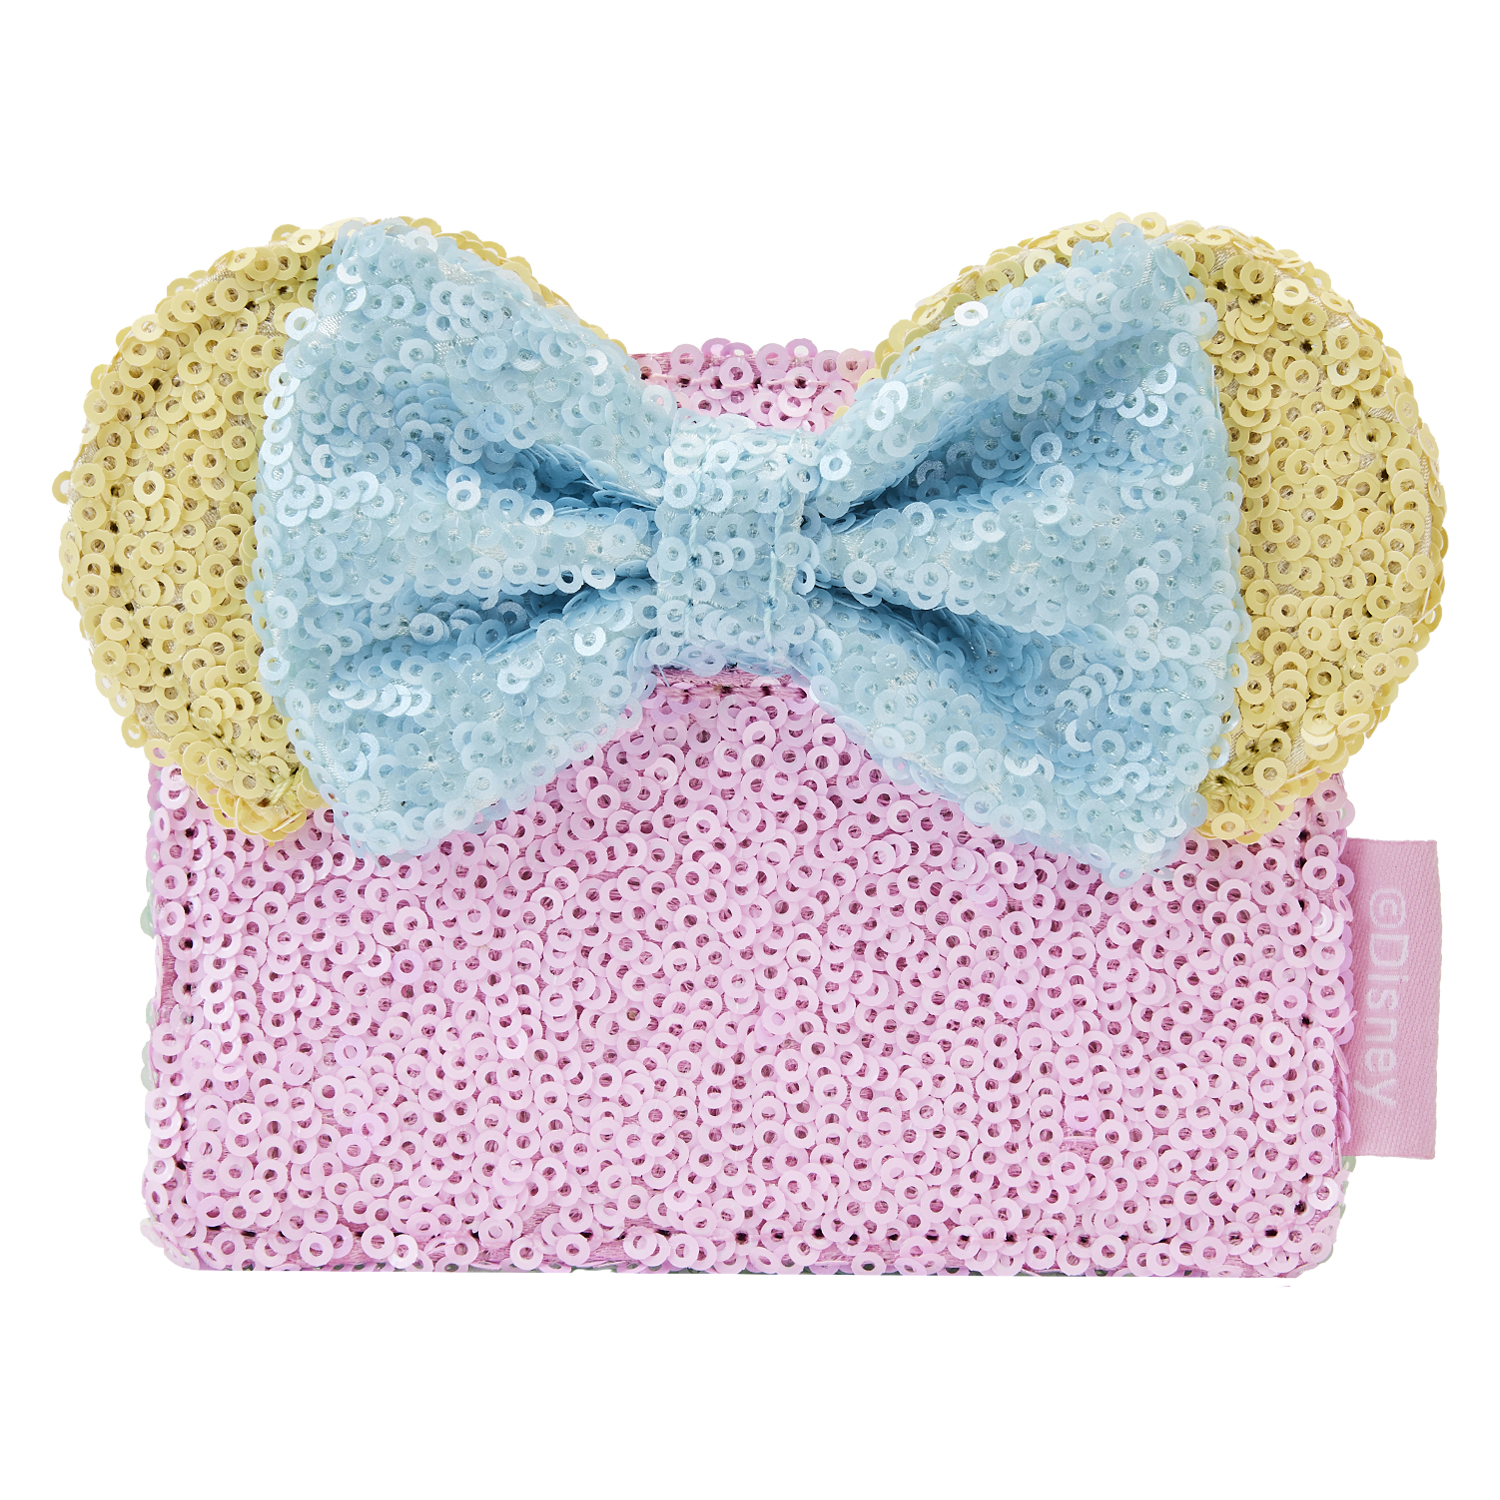 Disney Minnie Mouse Pastel Polka Dot Ear Headband